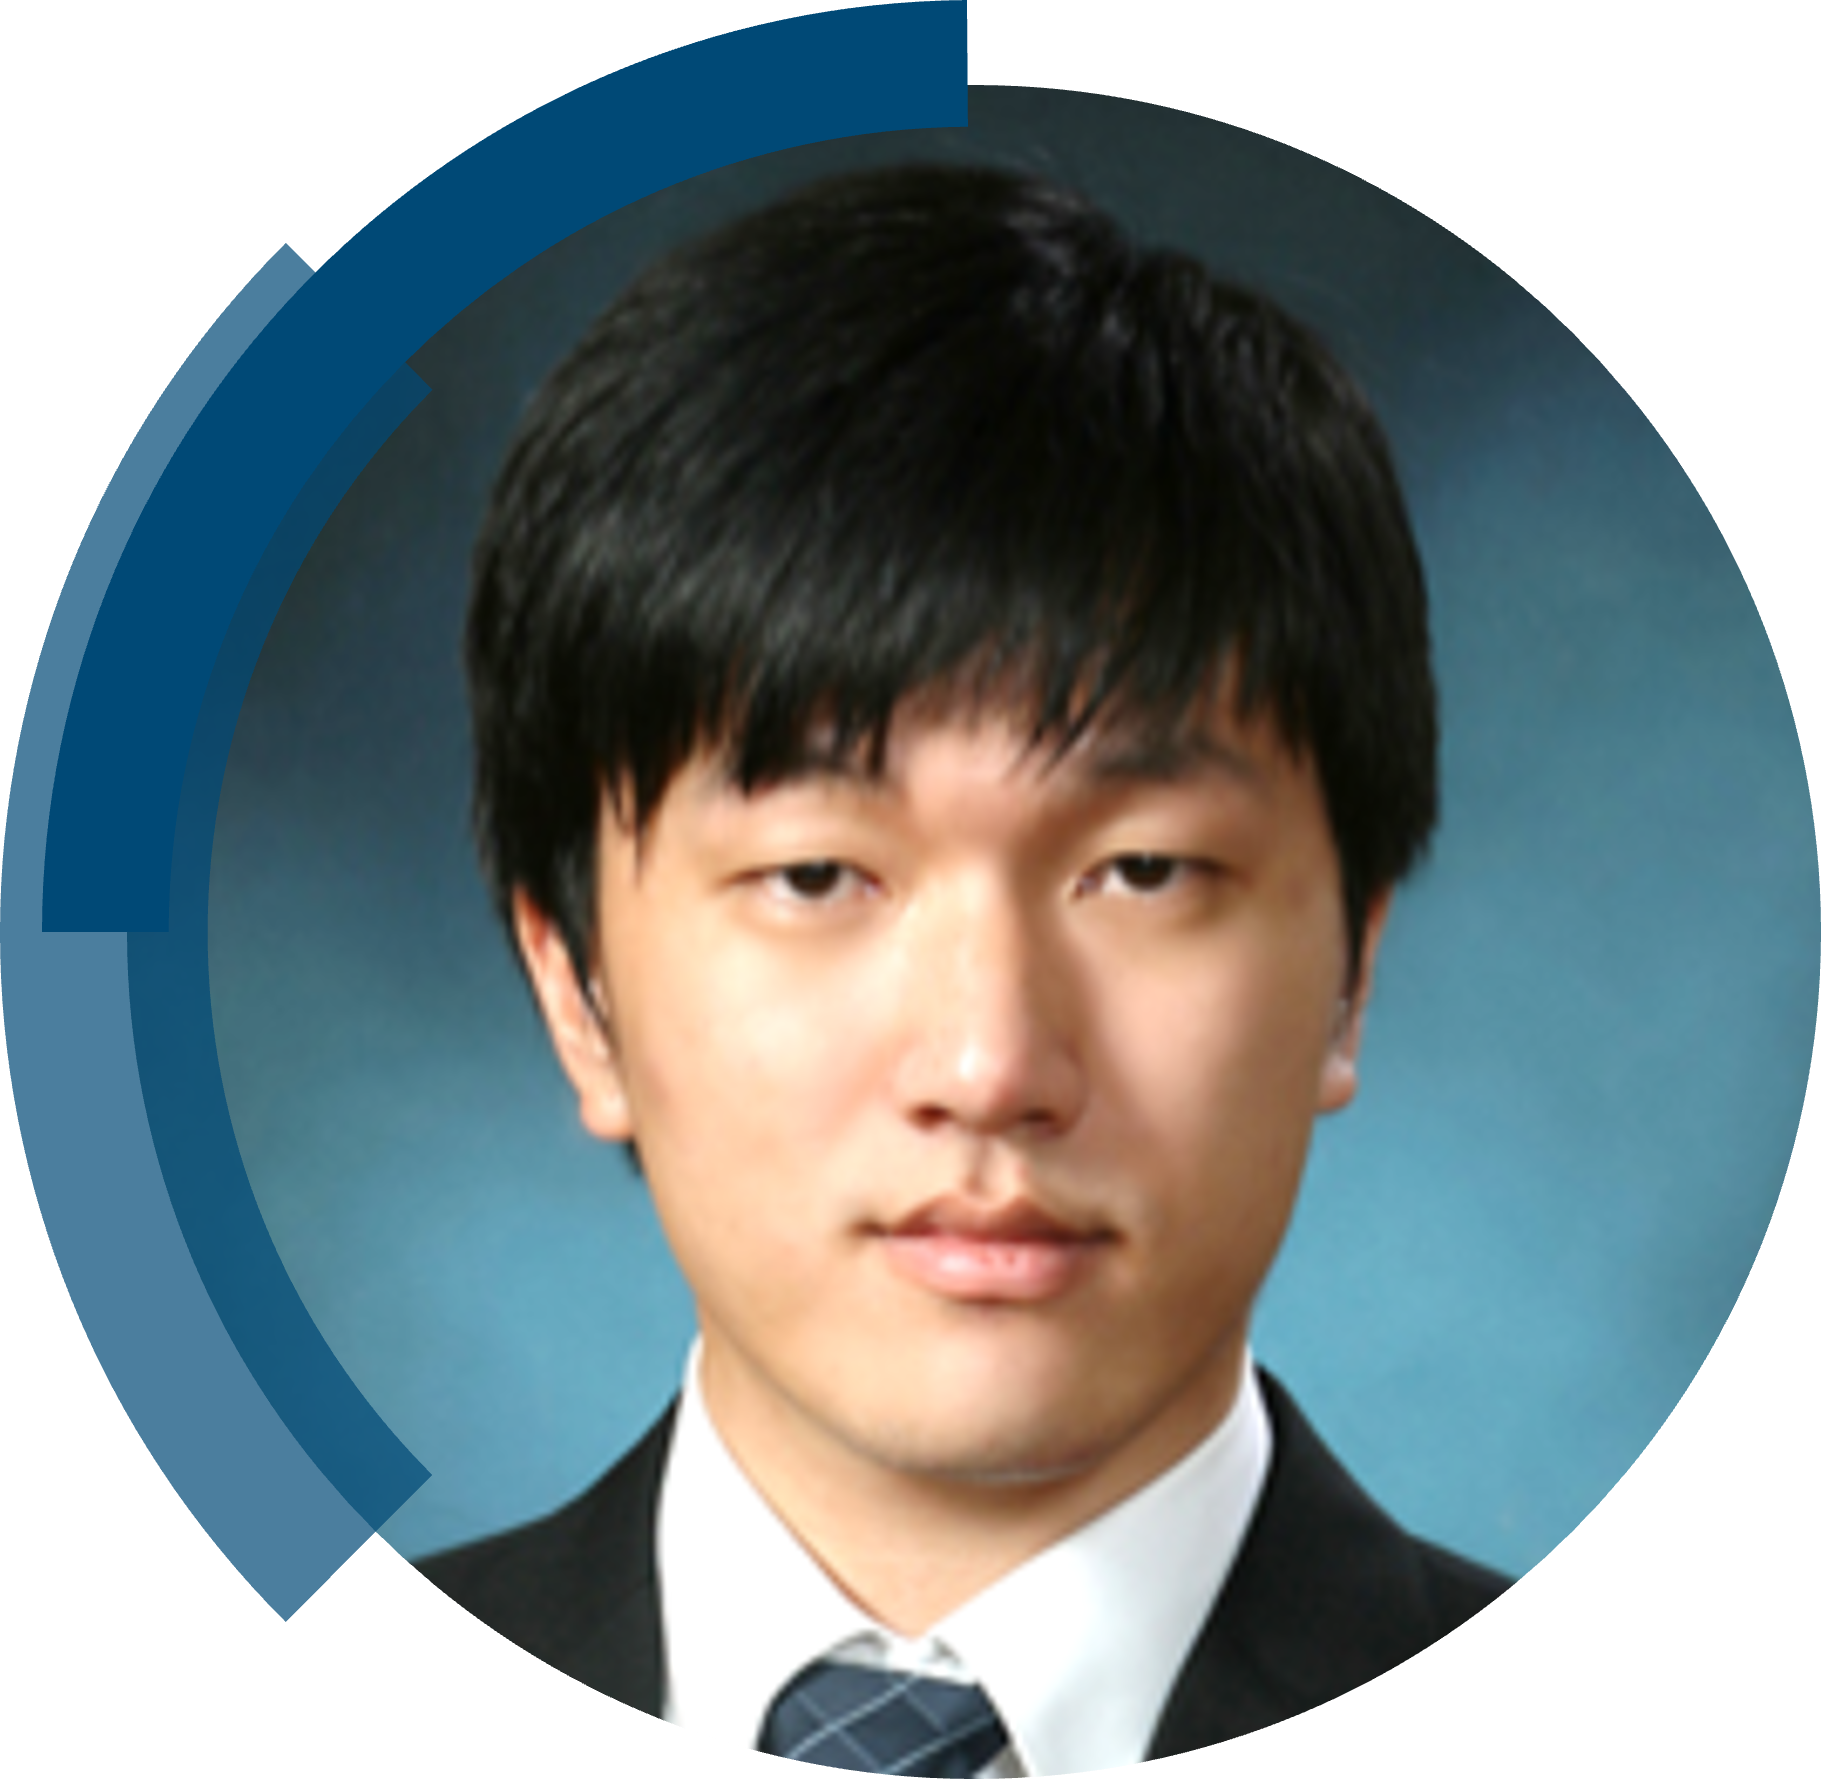 Dr Joonmyung Choi